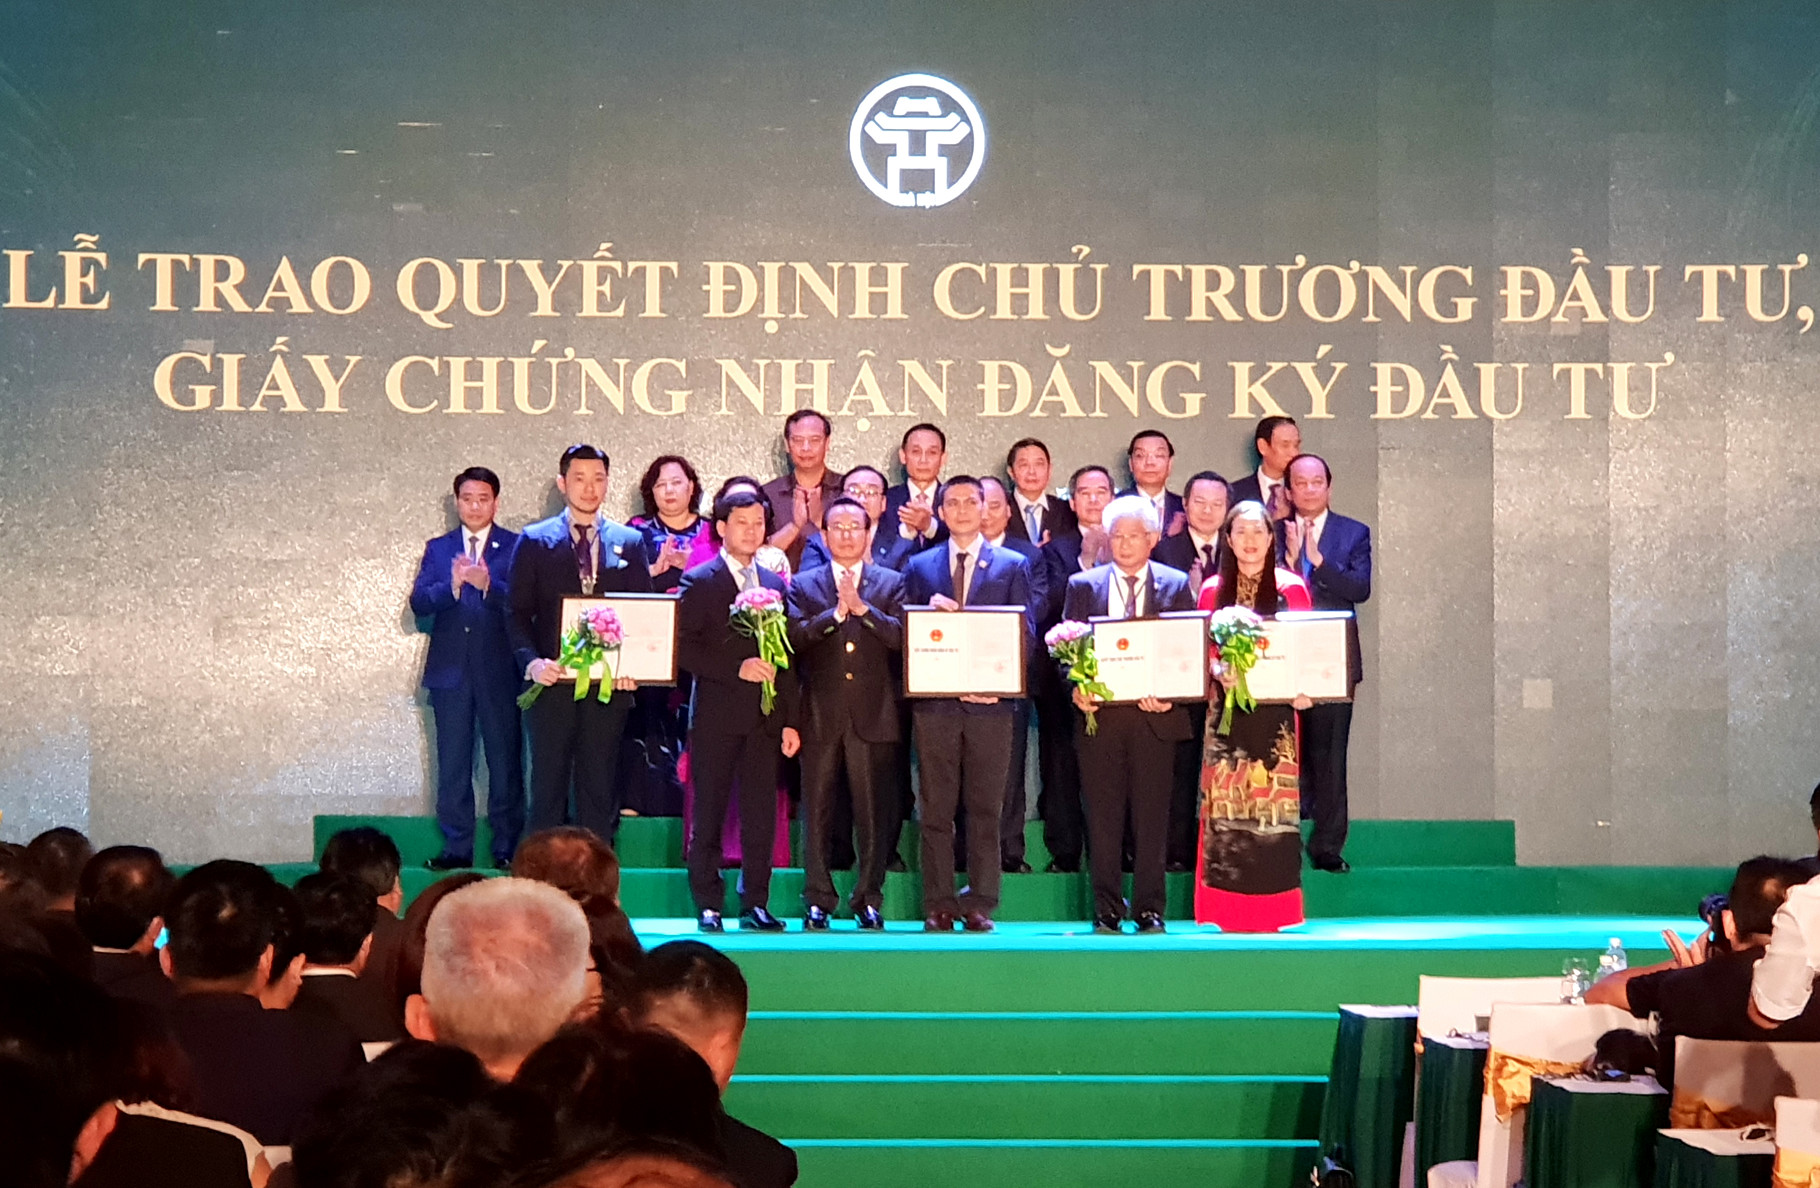 Description: Tân Hoàng Minh đón nhận bằng khen của Thủ tướng Chính phủ trong dịp kỷ niệm 25 năm Thành lập Tập đoàn